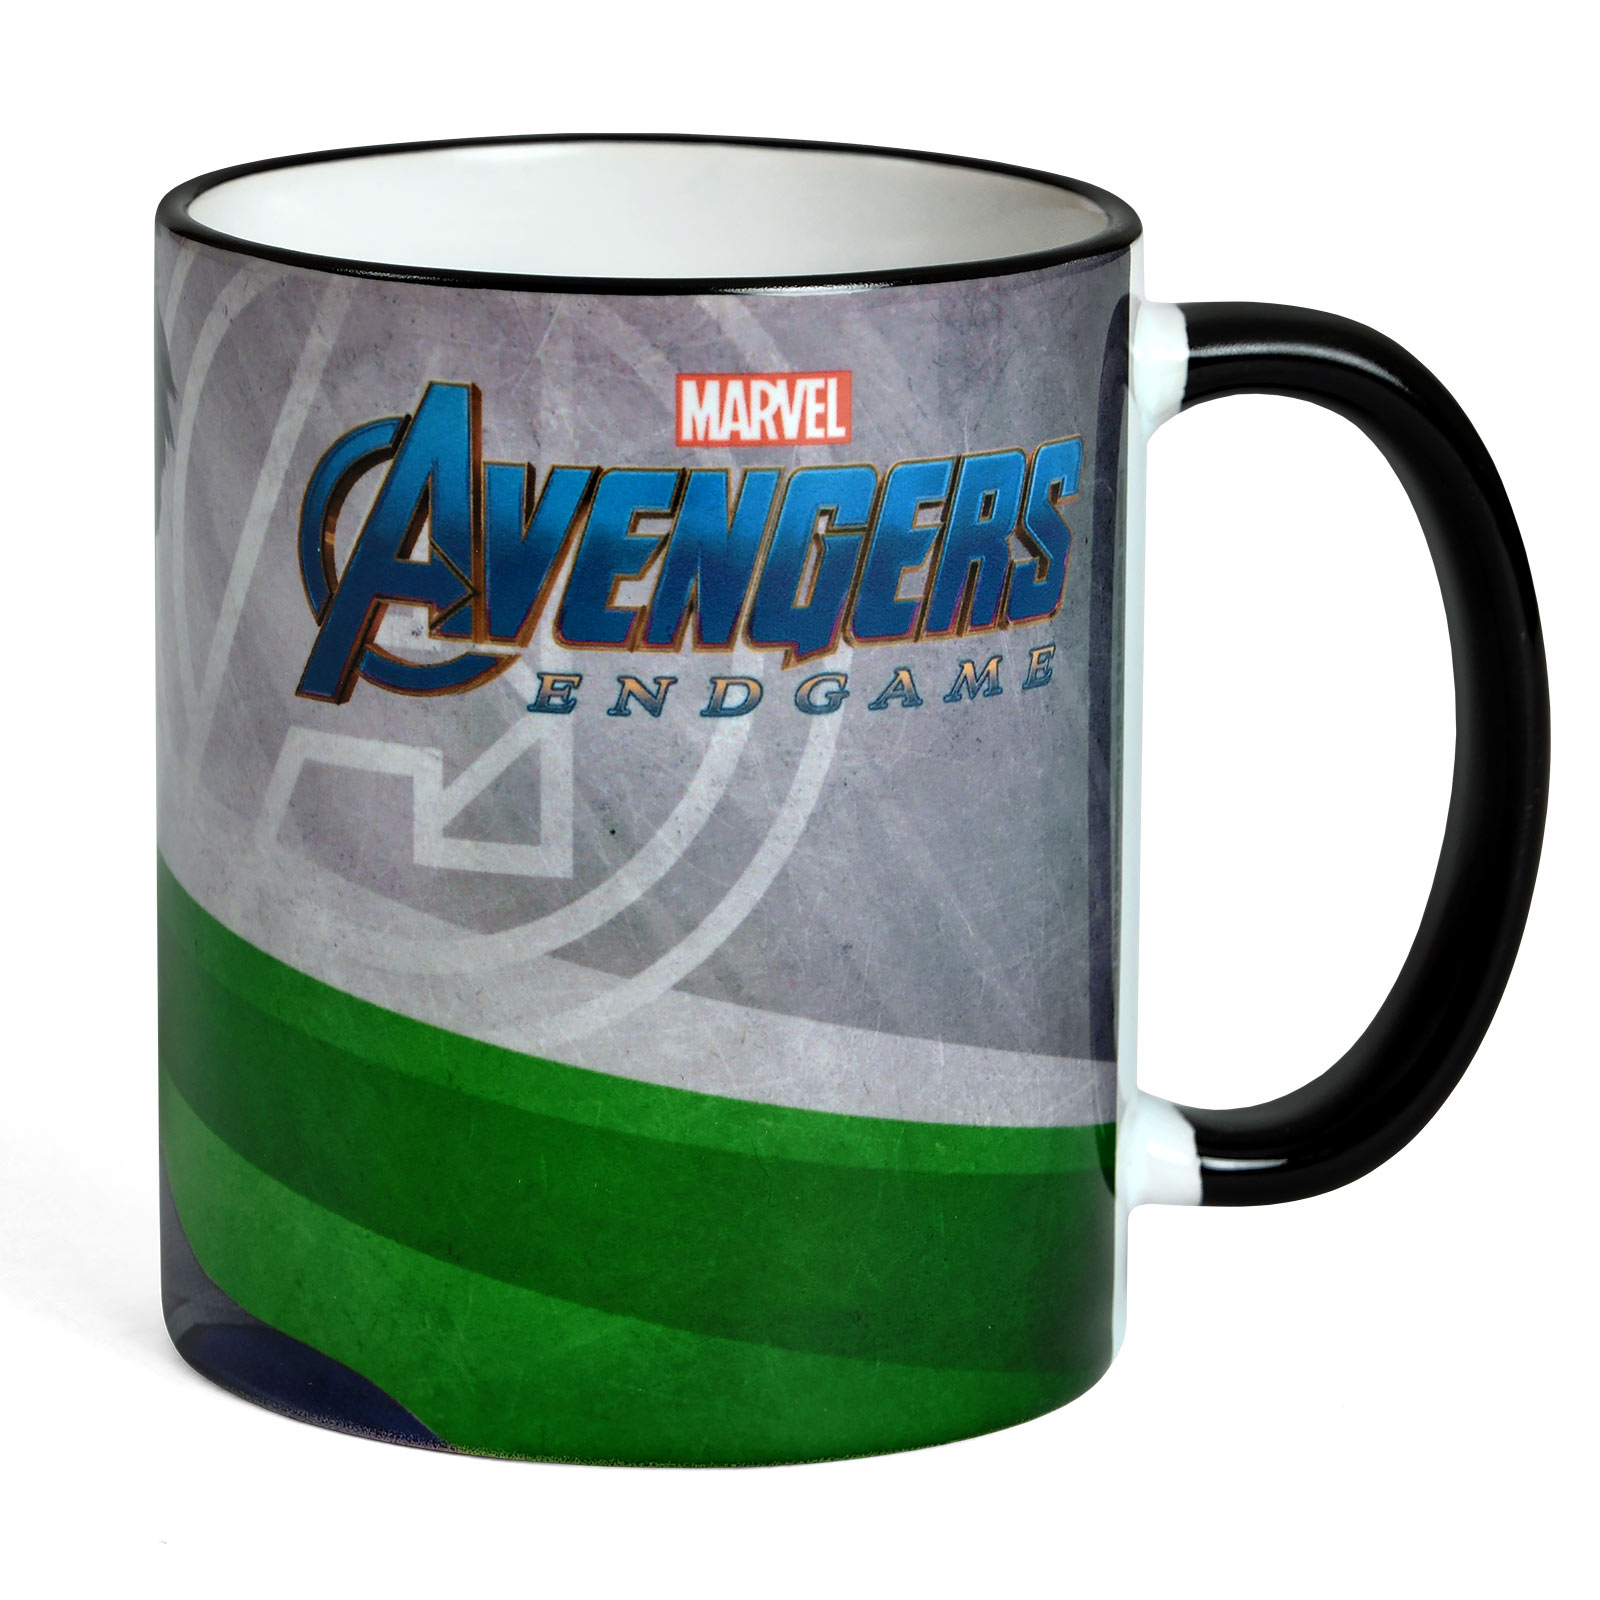 Avengers - Hulk Endgame Tasse